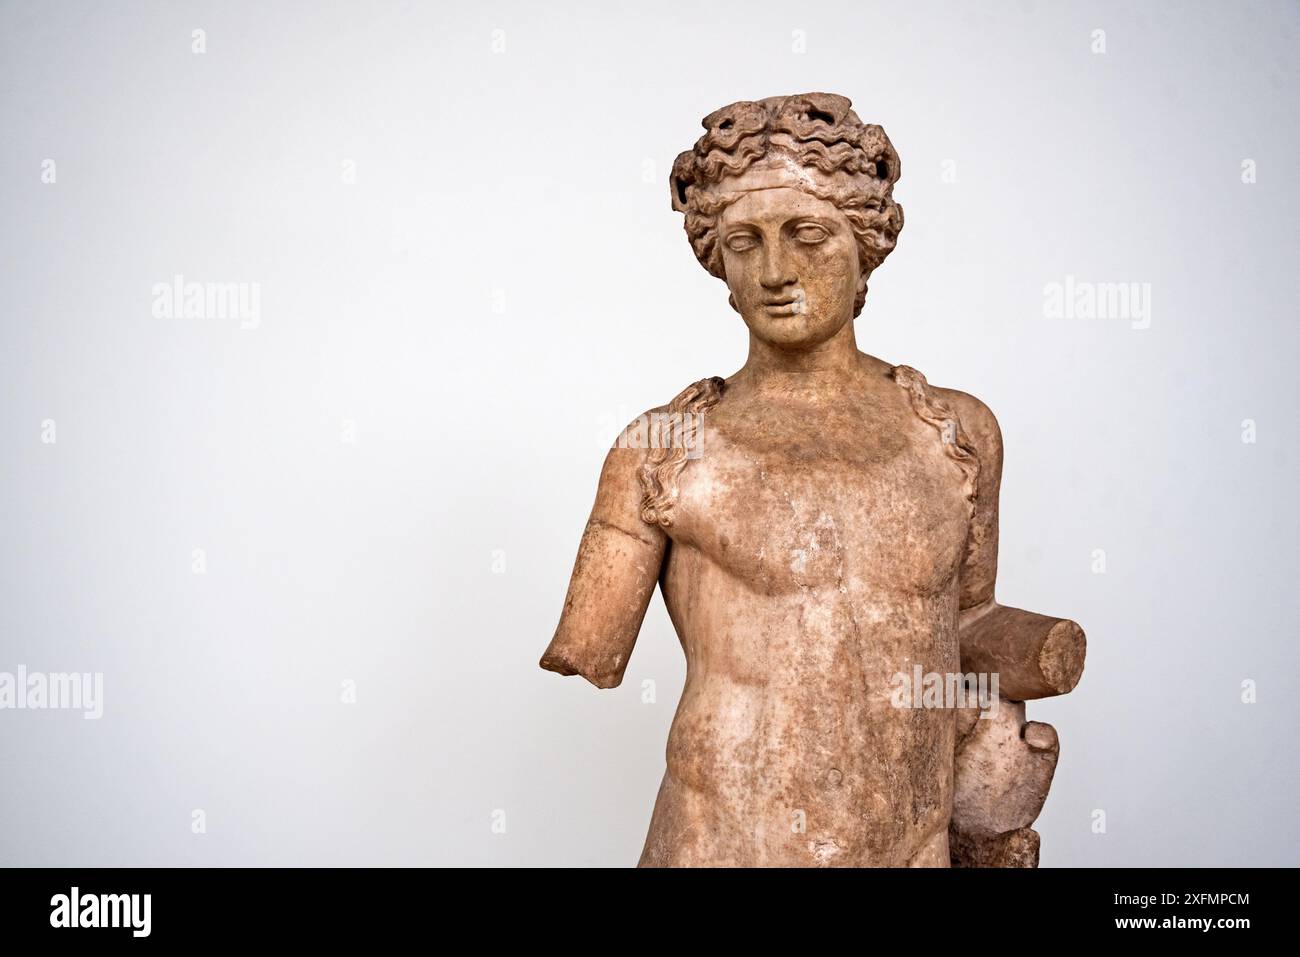 Marmorstatue von Dionysos, dem griechischen Gott des Weins, aus den jahren 117 bis 200 n. Chr. im National Museum of Scotland, Edinburgh. Stockfoto